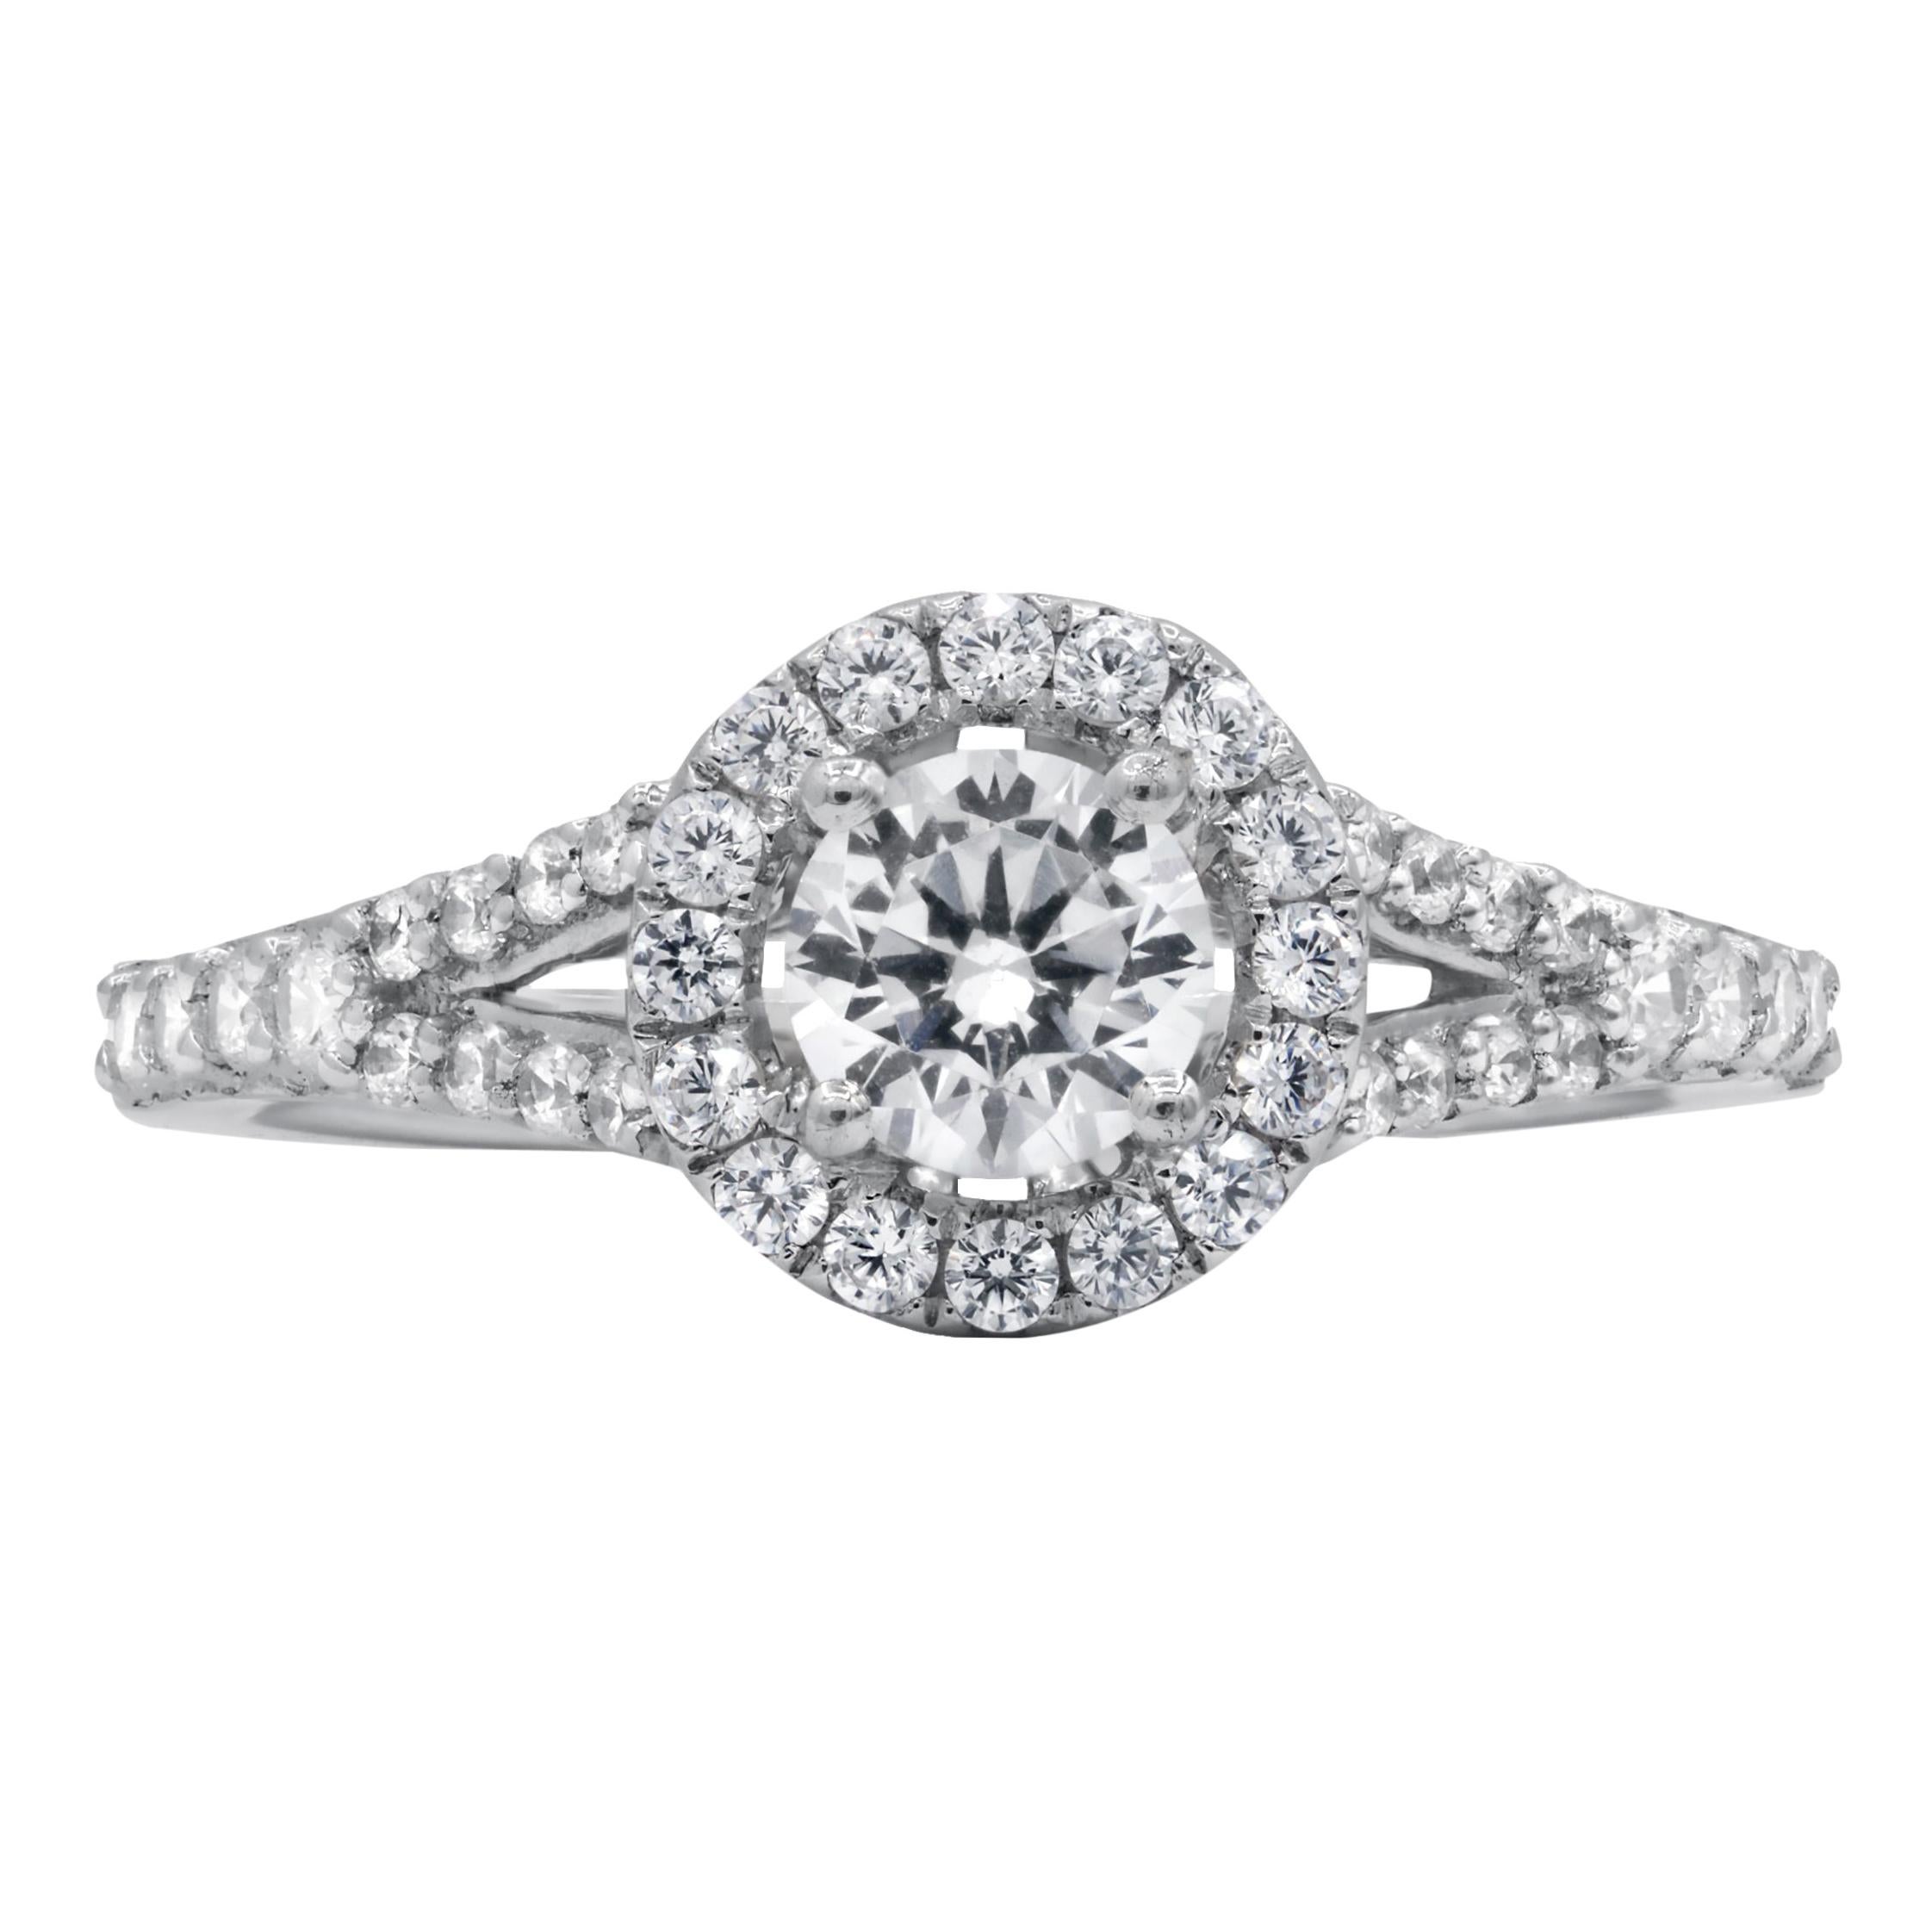 Diana M. Fine Jewelry 14k 0.90 Ct Tw Diamond Ring For Sale